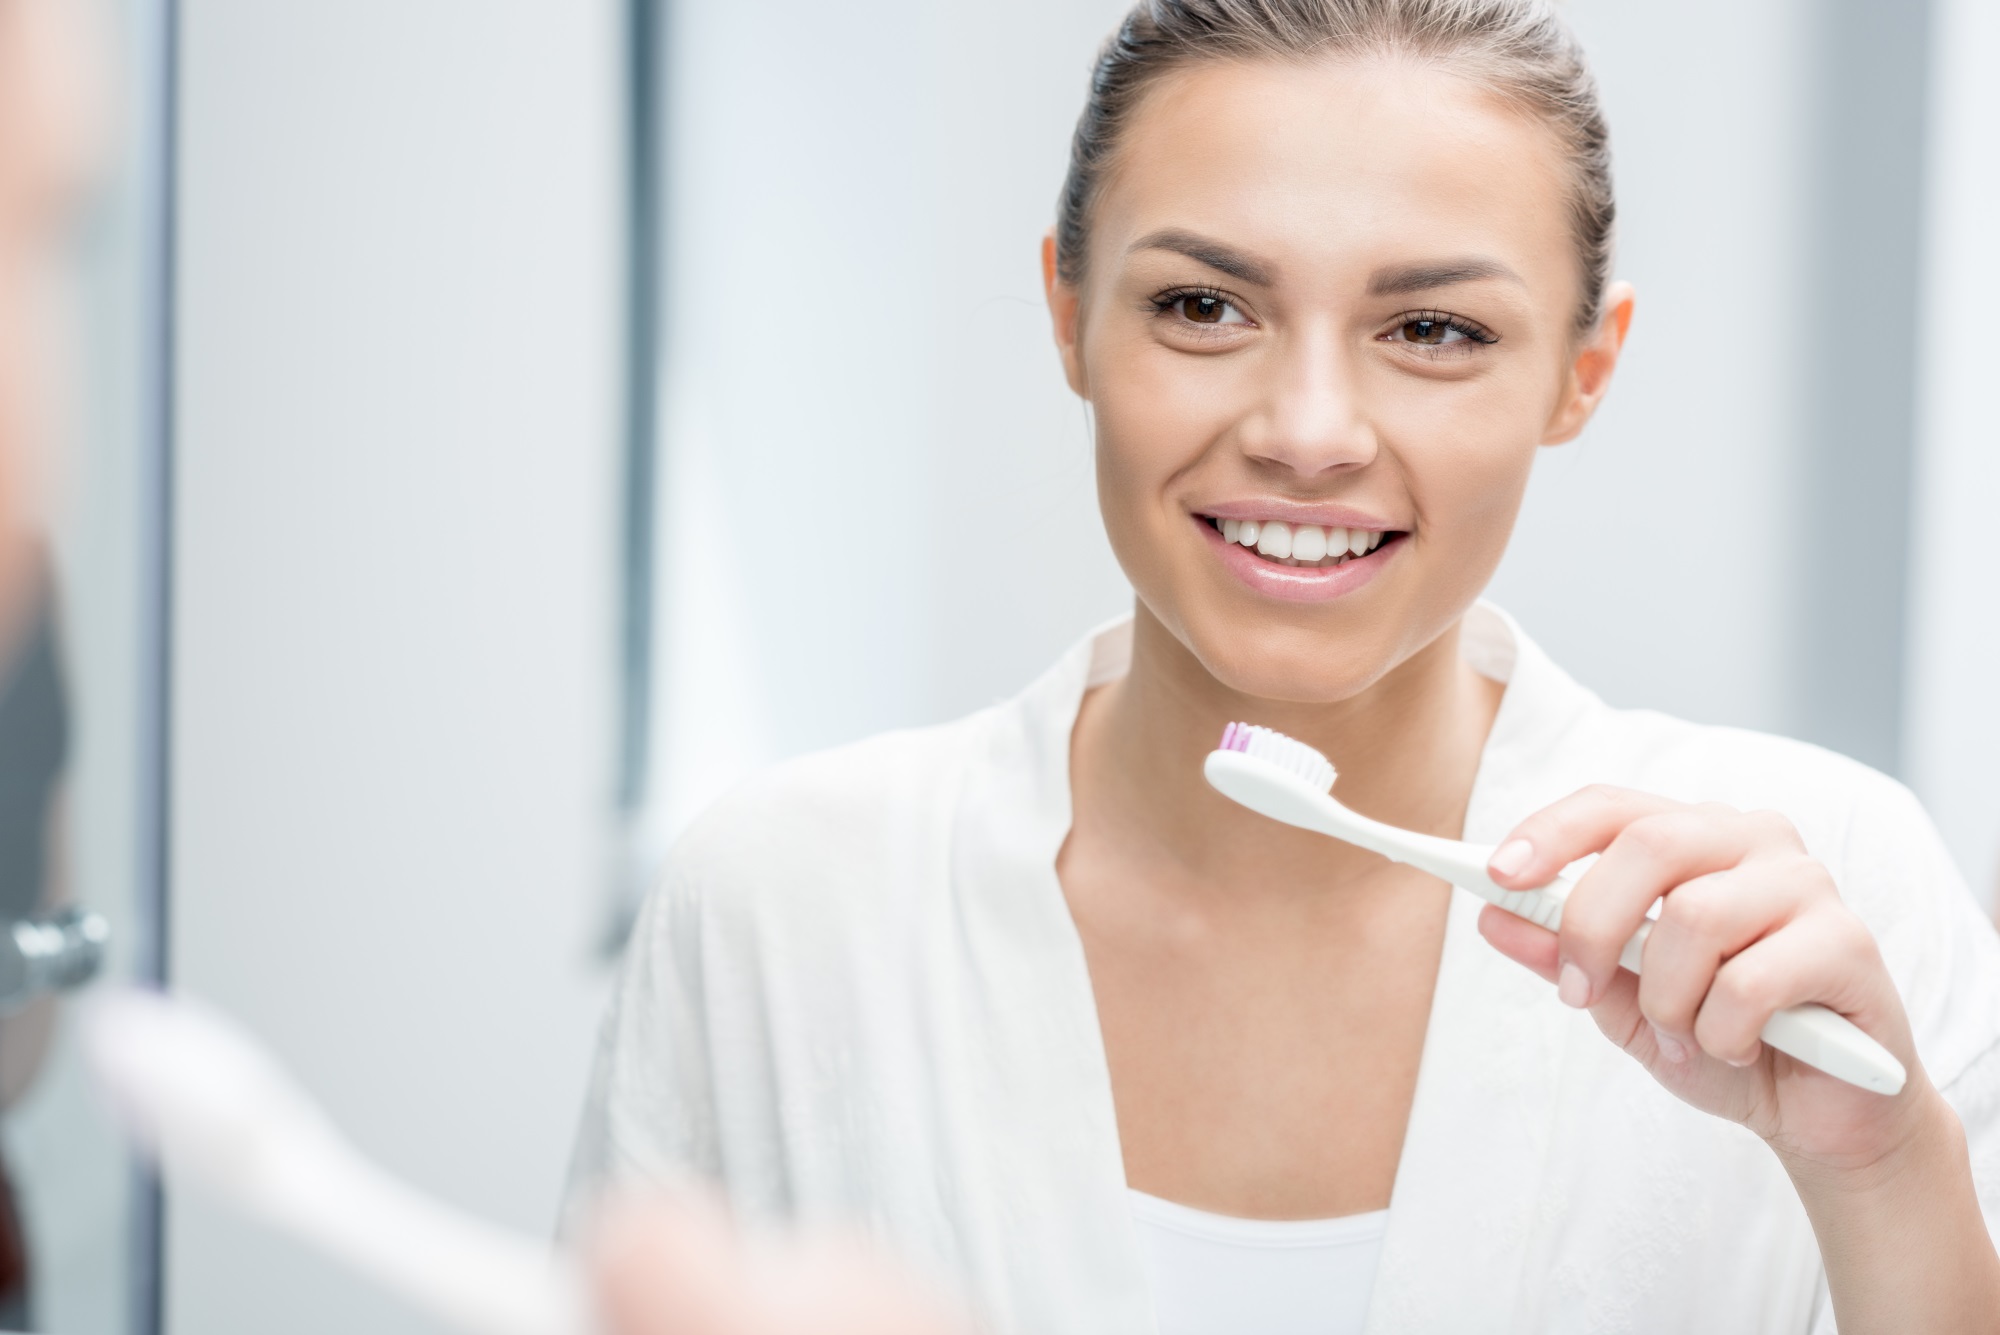 Гигиена полости рта у детей – советы стоматологов Дентал Фэнтези